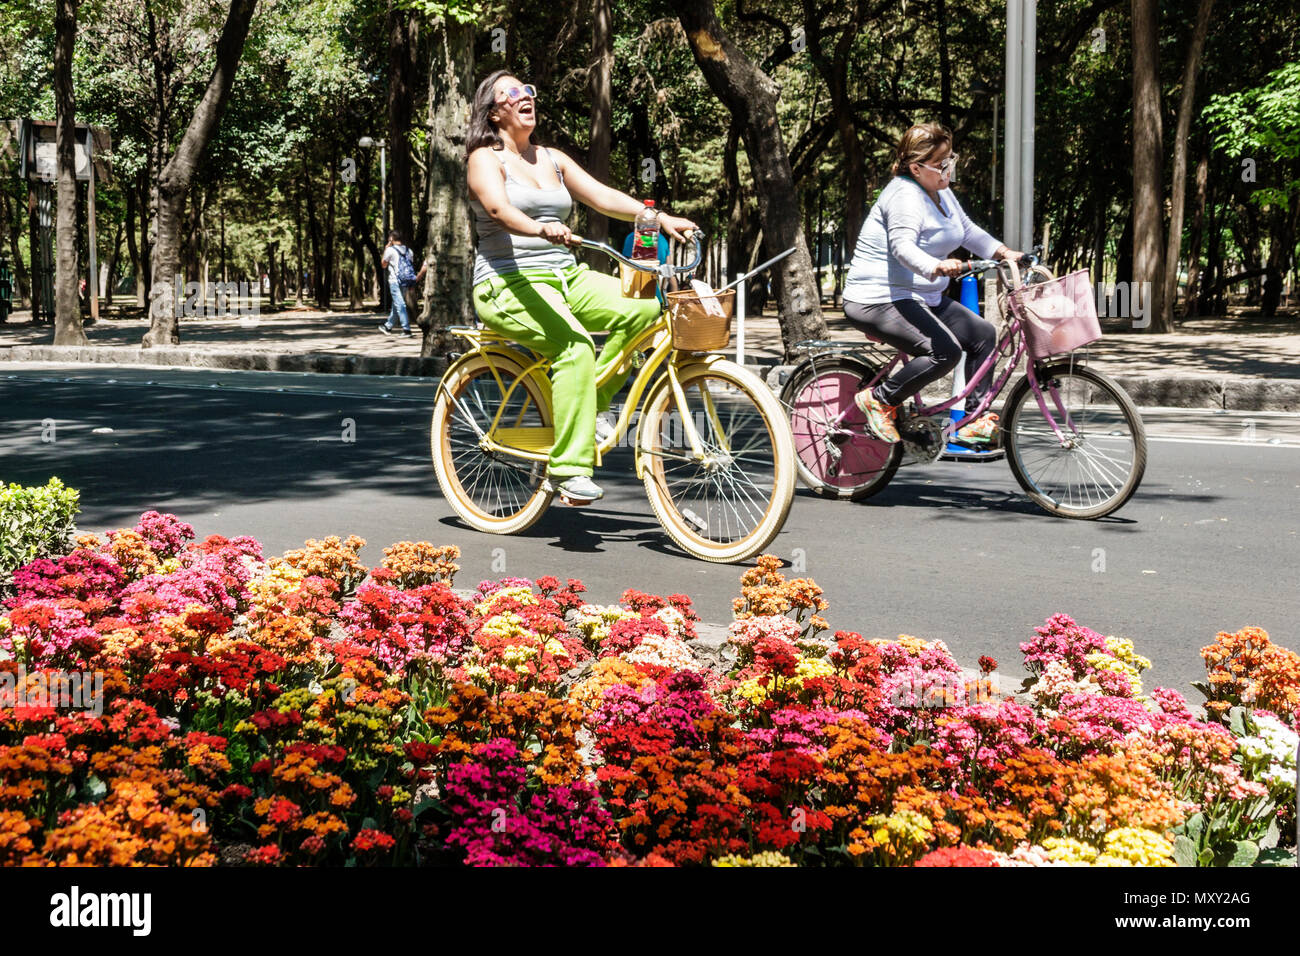 Città del Messico, bosque ispanico de Chapultepec foresta, Paseo la Reforma, Muevete en Bici, spostare in bicicletta, auto-free domenica biciclette bicicletta bicicletta equitazione bik Foto Stock